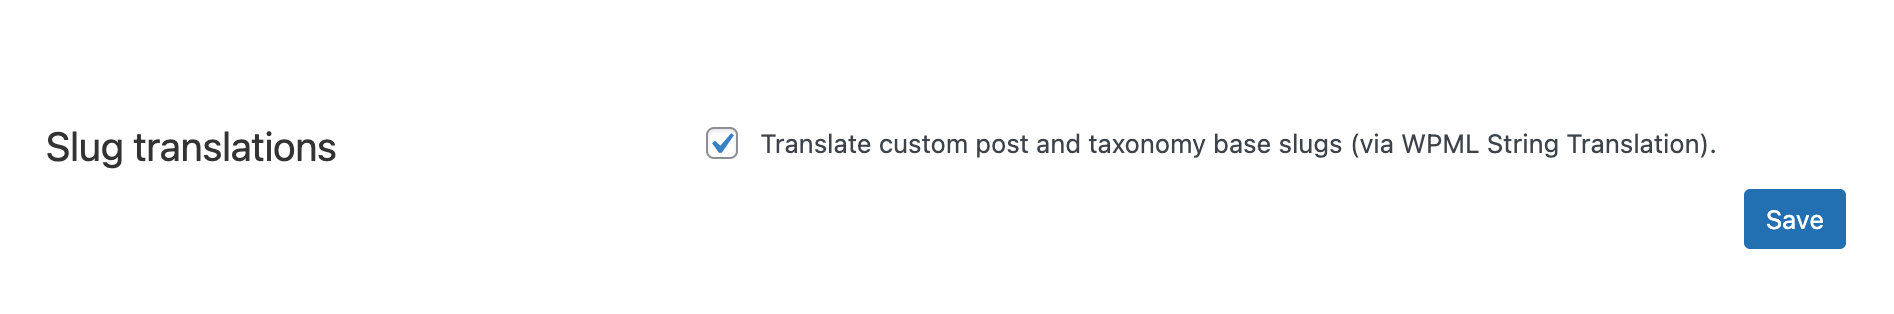 Slug translations > Translate custom post and taxonomy based slugs with WPML